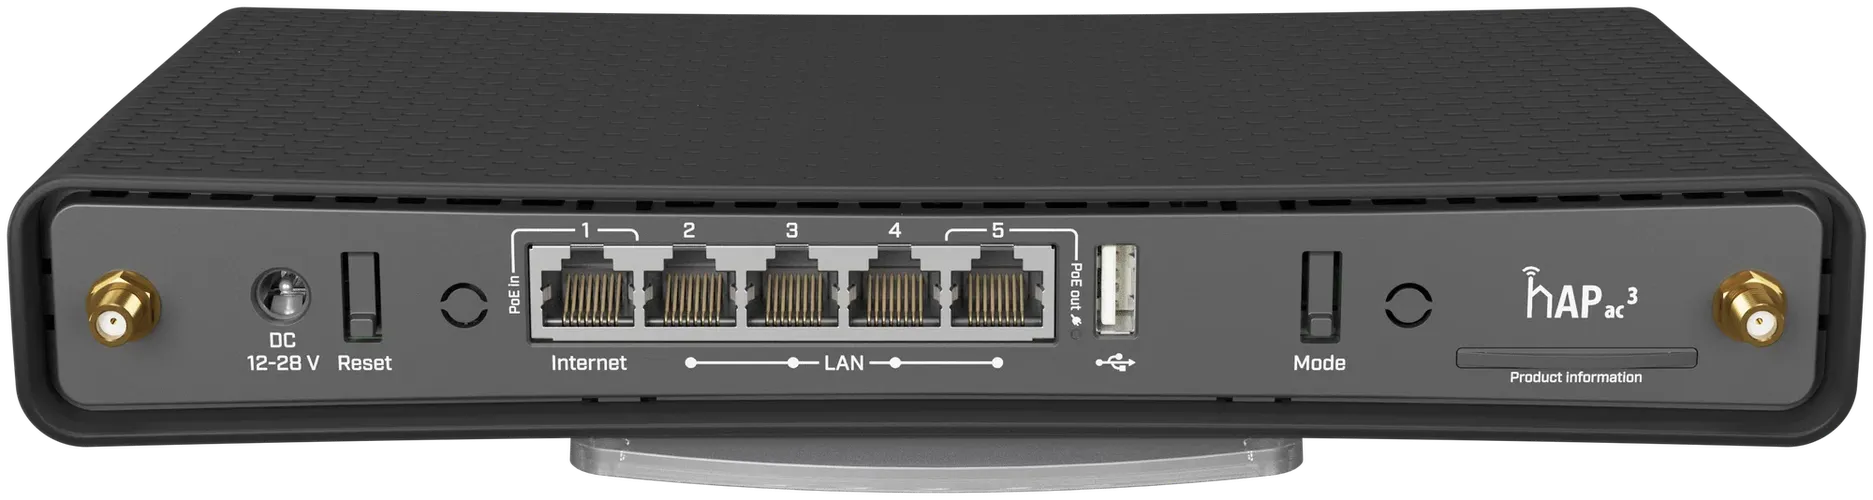 Wi-Fi роутер Mikrotik HAP ac3 RBD53iG-5HacD2HnD, Черный, фото